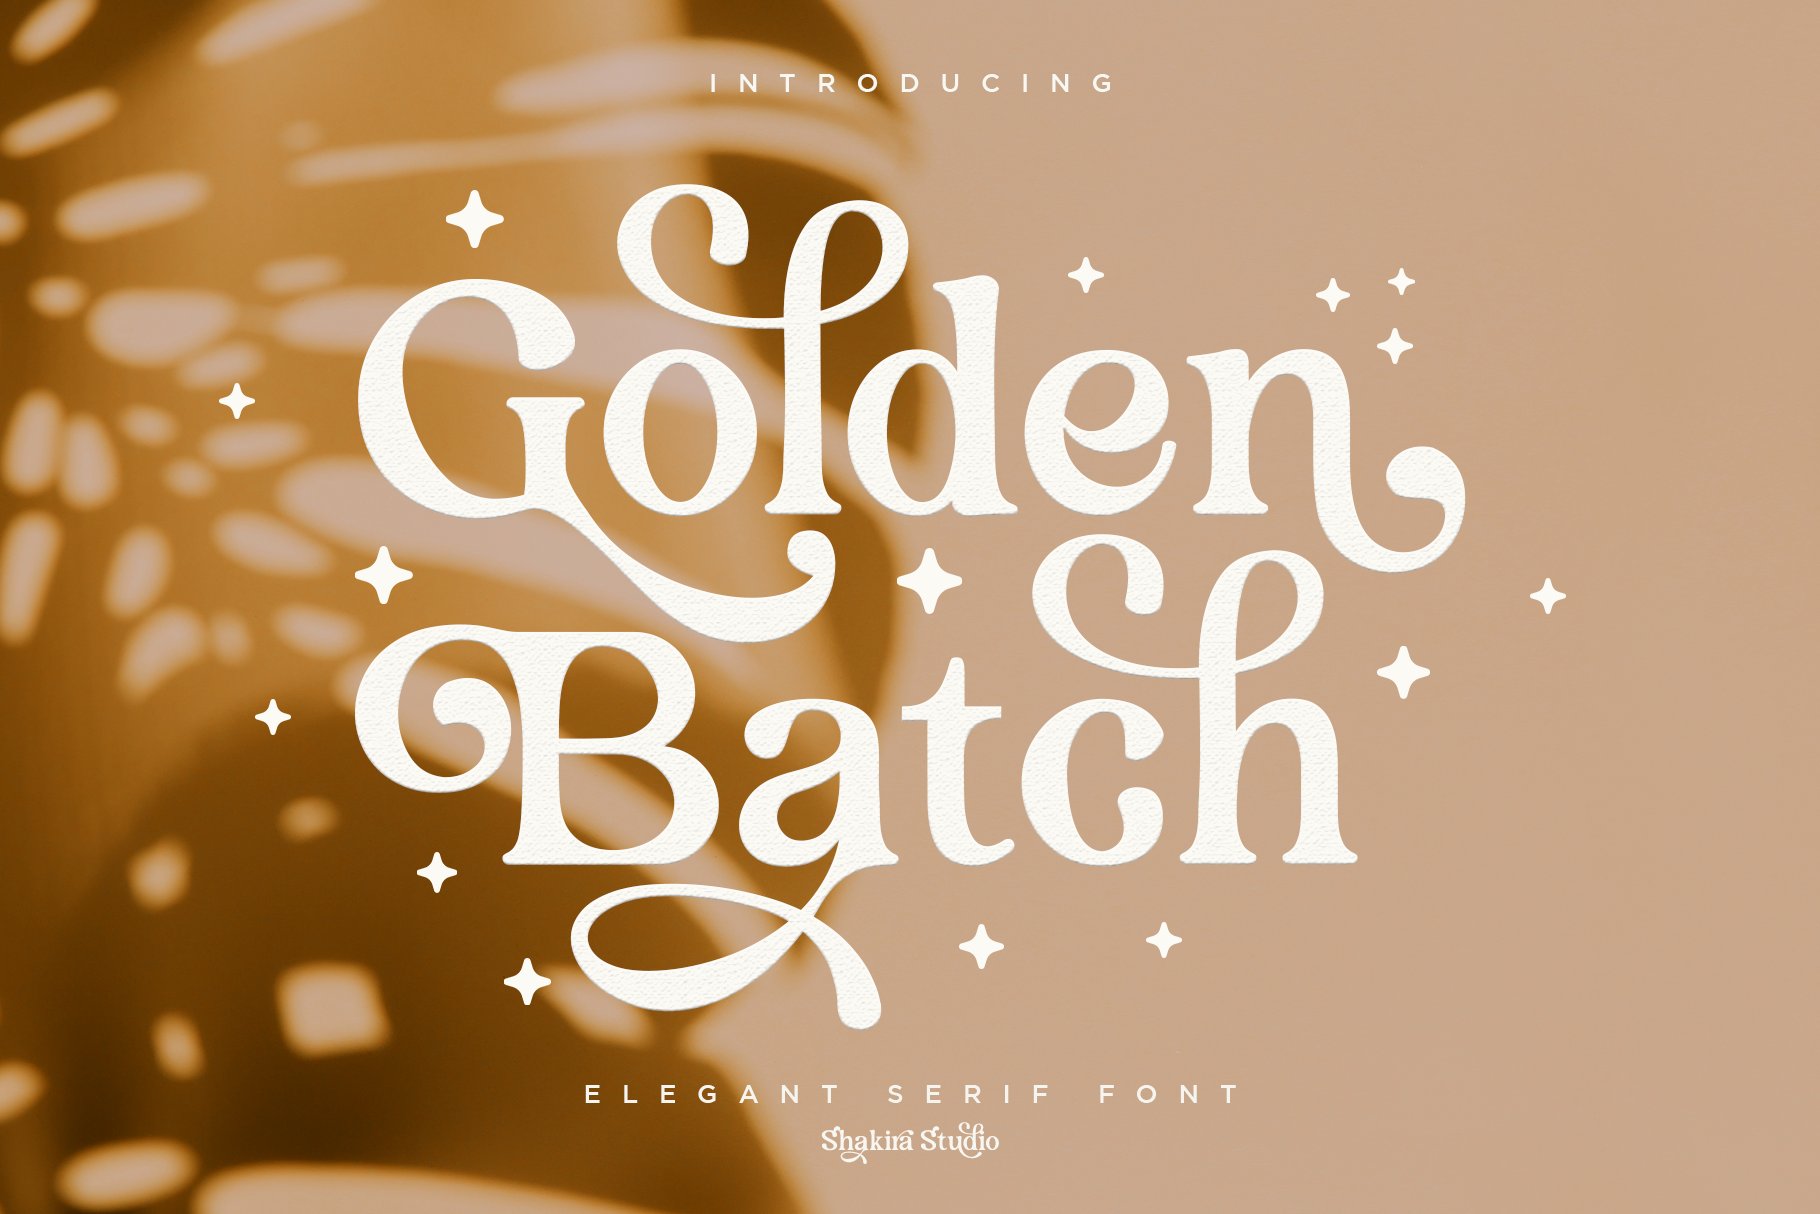 Golden Batch - Elegant Serif Font cover image.